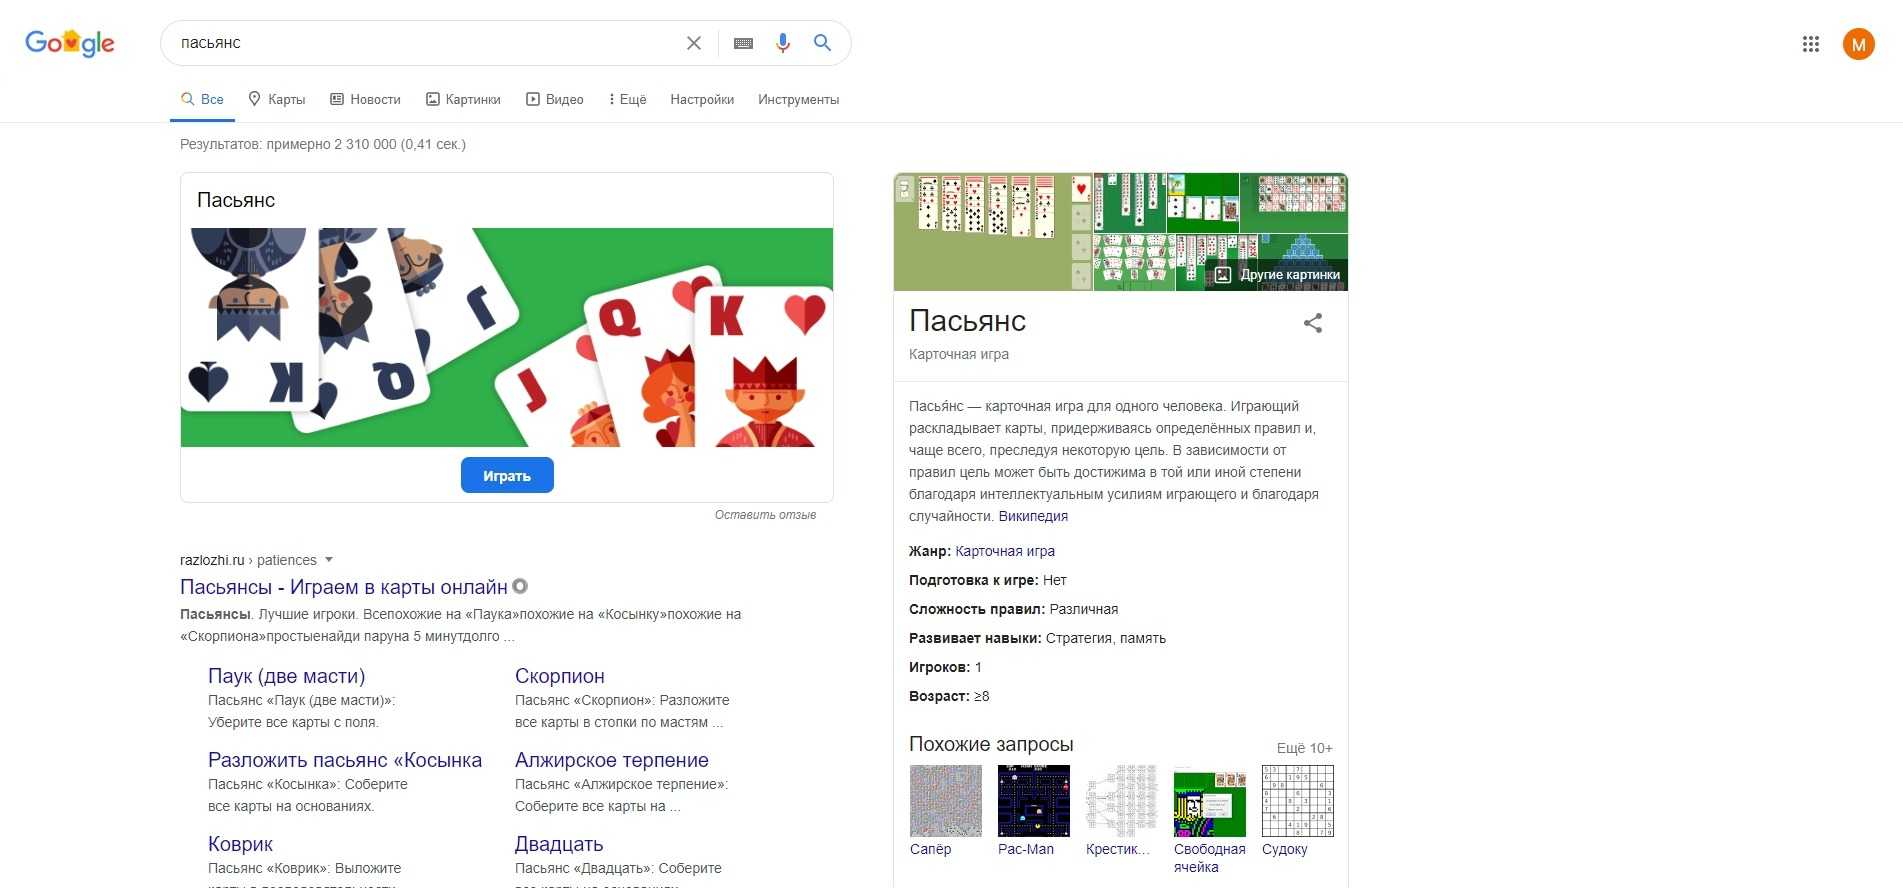 Яндекс ты олень так гугл сказал — отношения